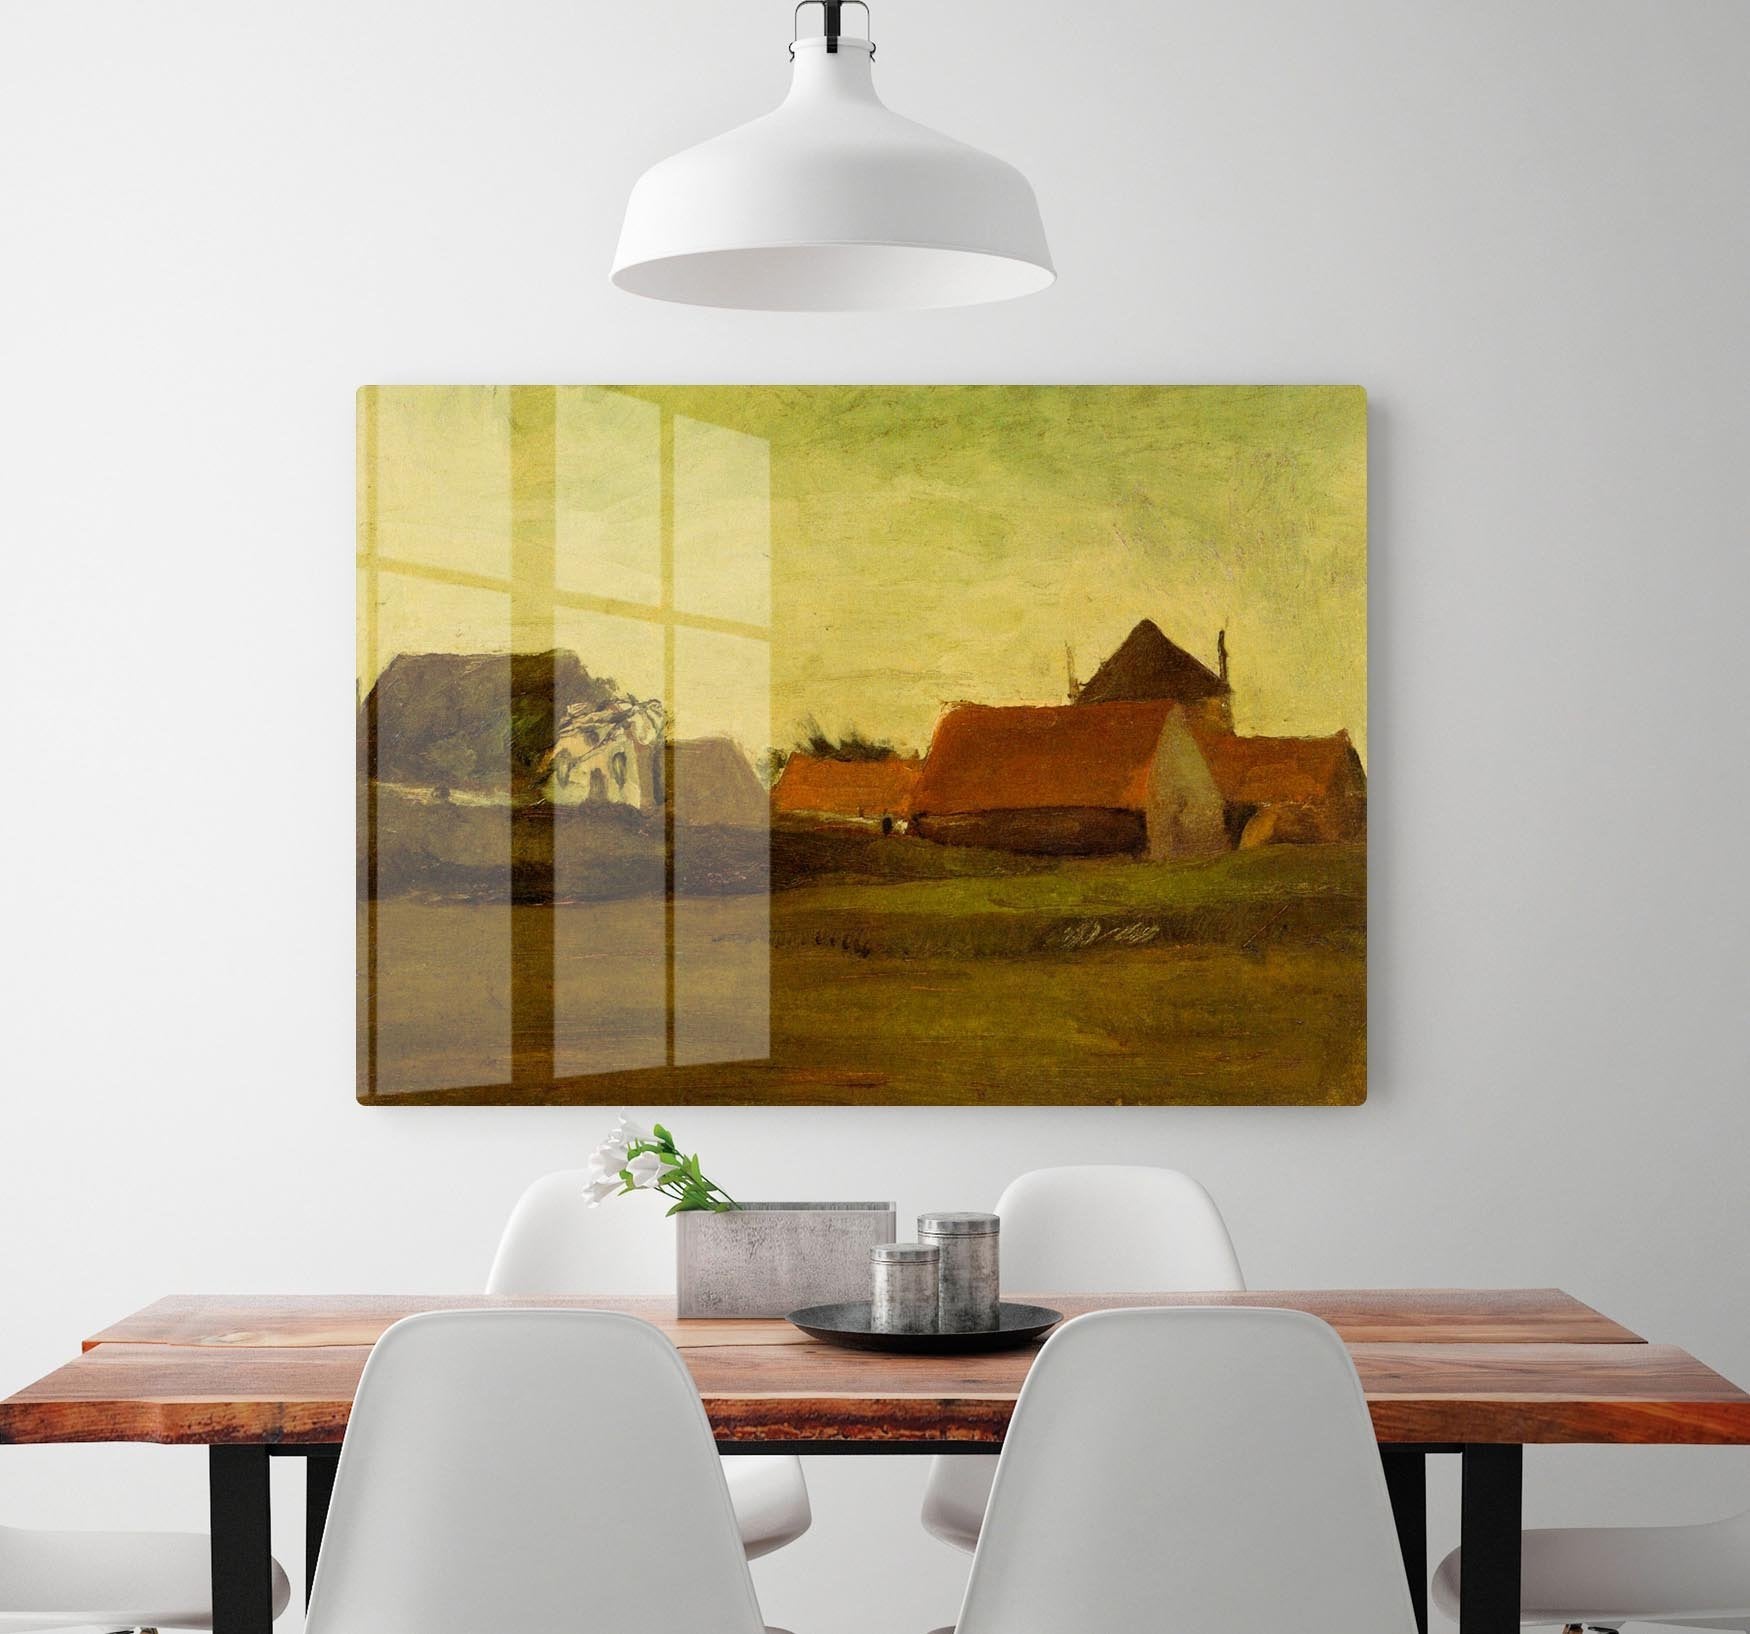 Farmhouses in Loosduinen near The Hague at Twilight by Van Gogh HD Metal Print